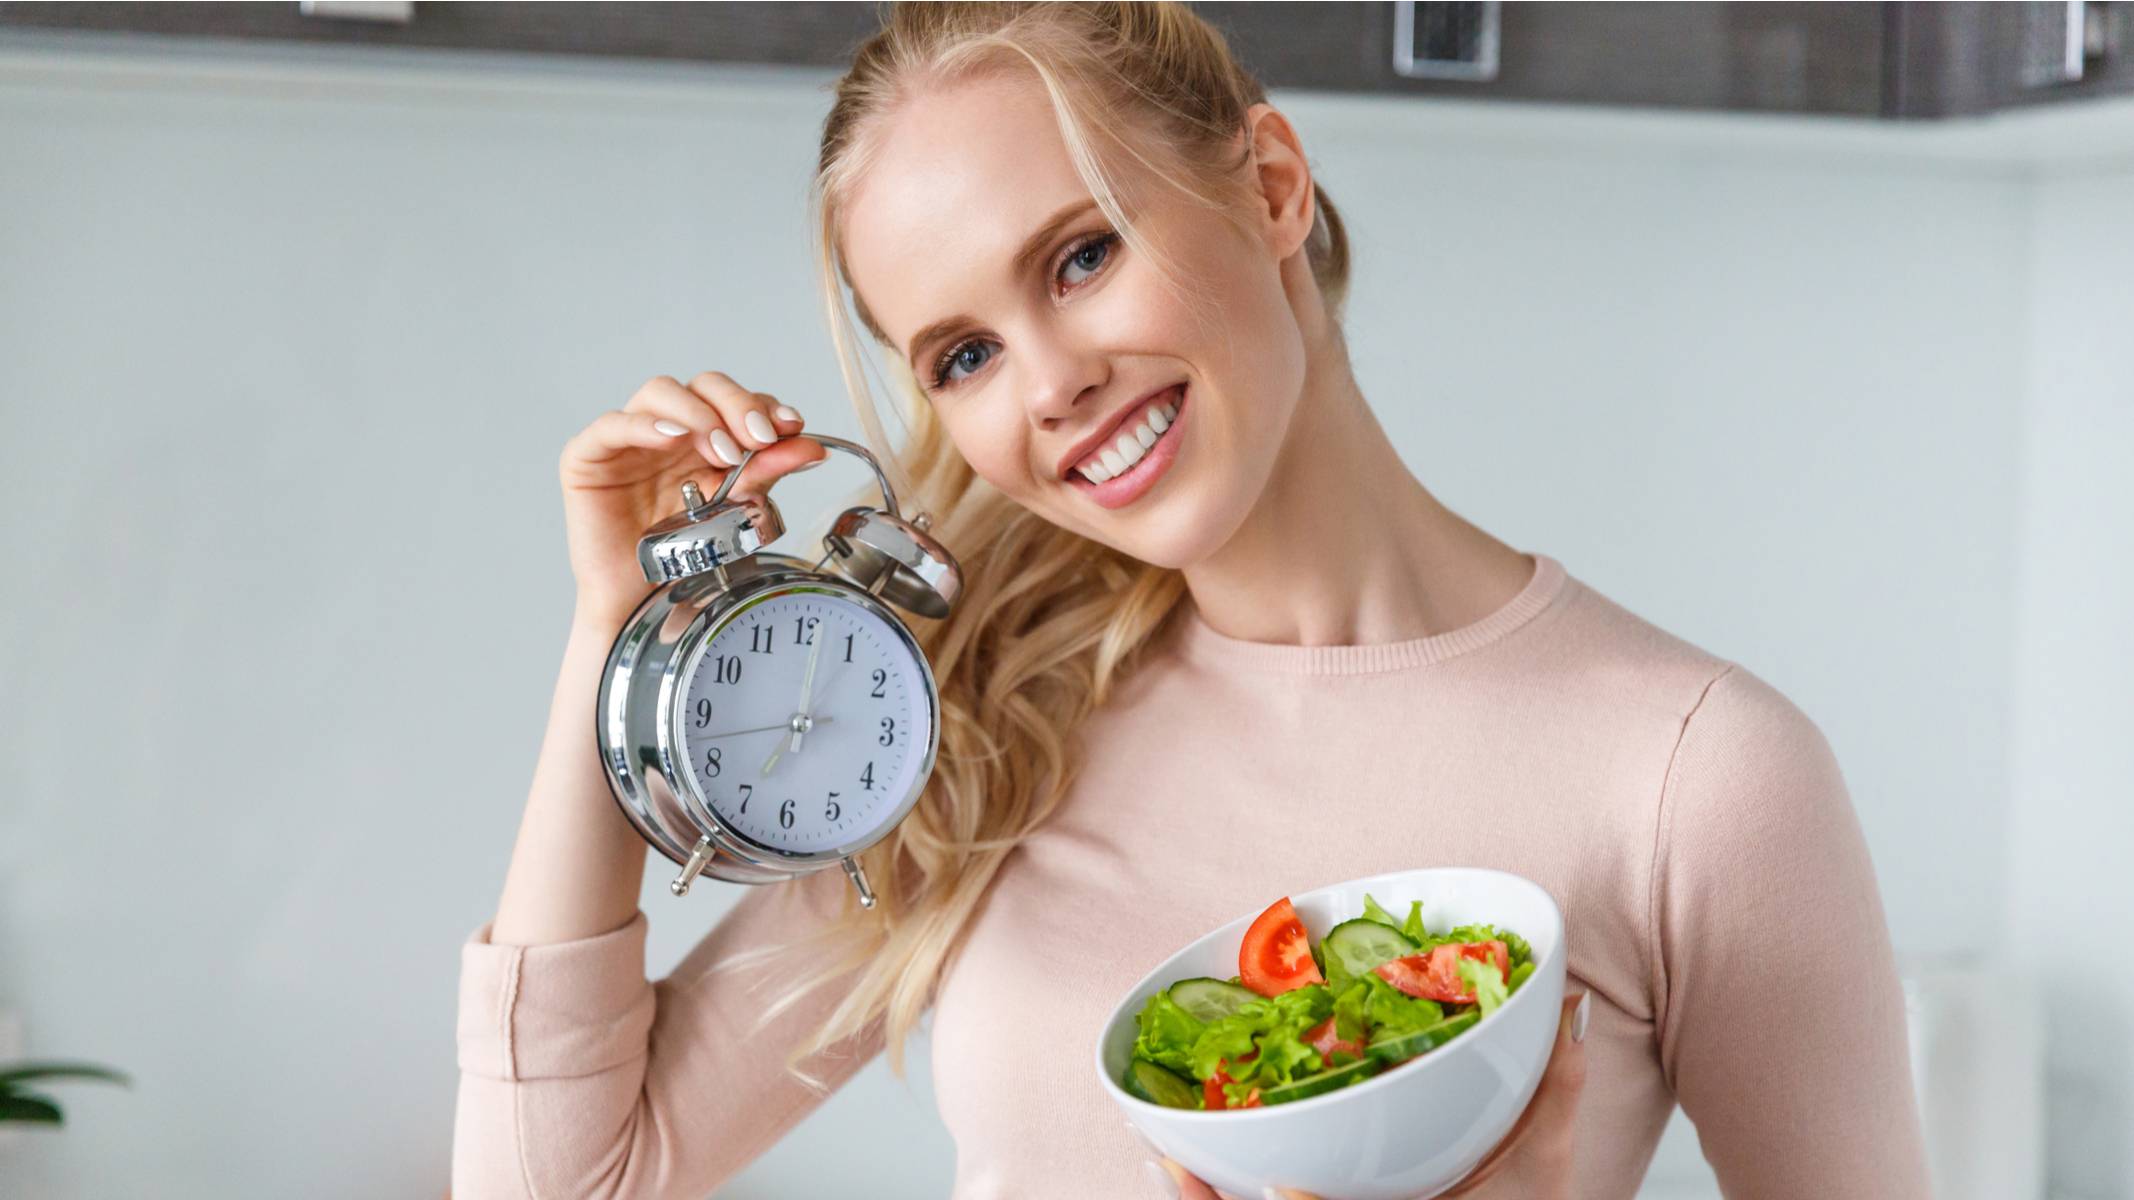 Кушать после 6 вечера. Биологические часы женщины похудение. Голодание и здоровье. Понемногу кушать. Интервальное голодание не ем после 6 вечера.